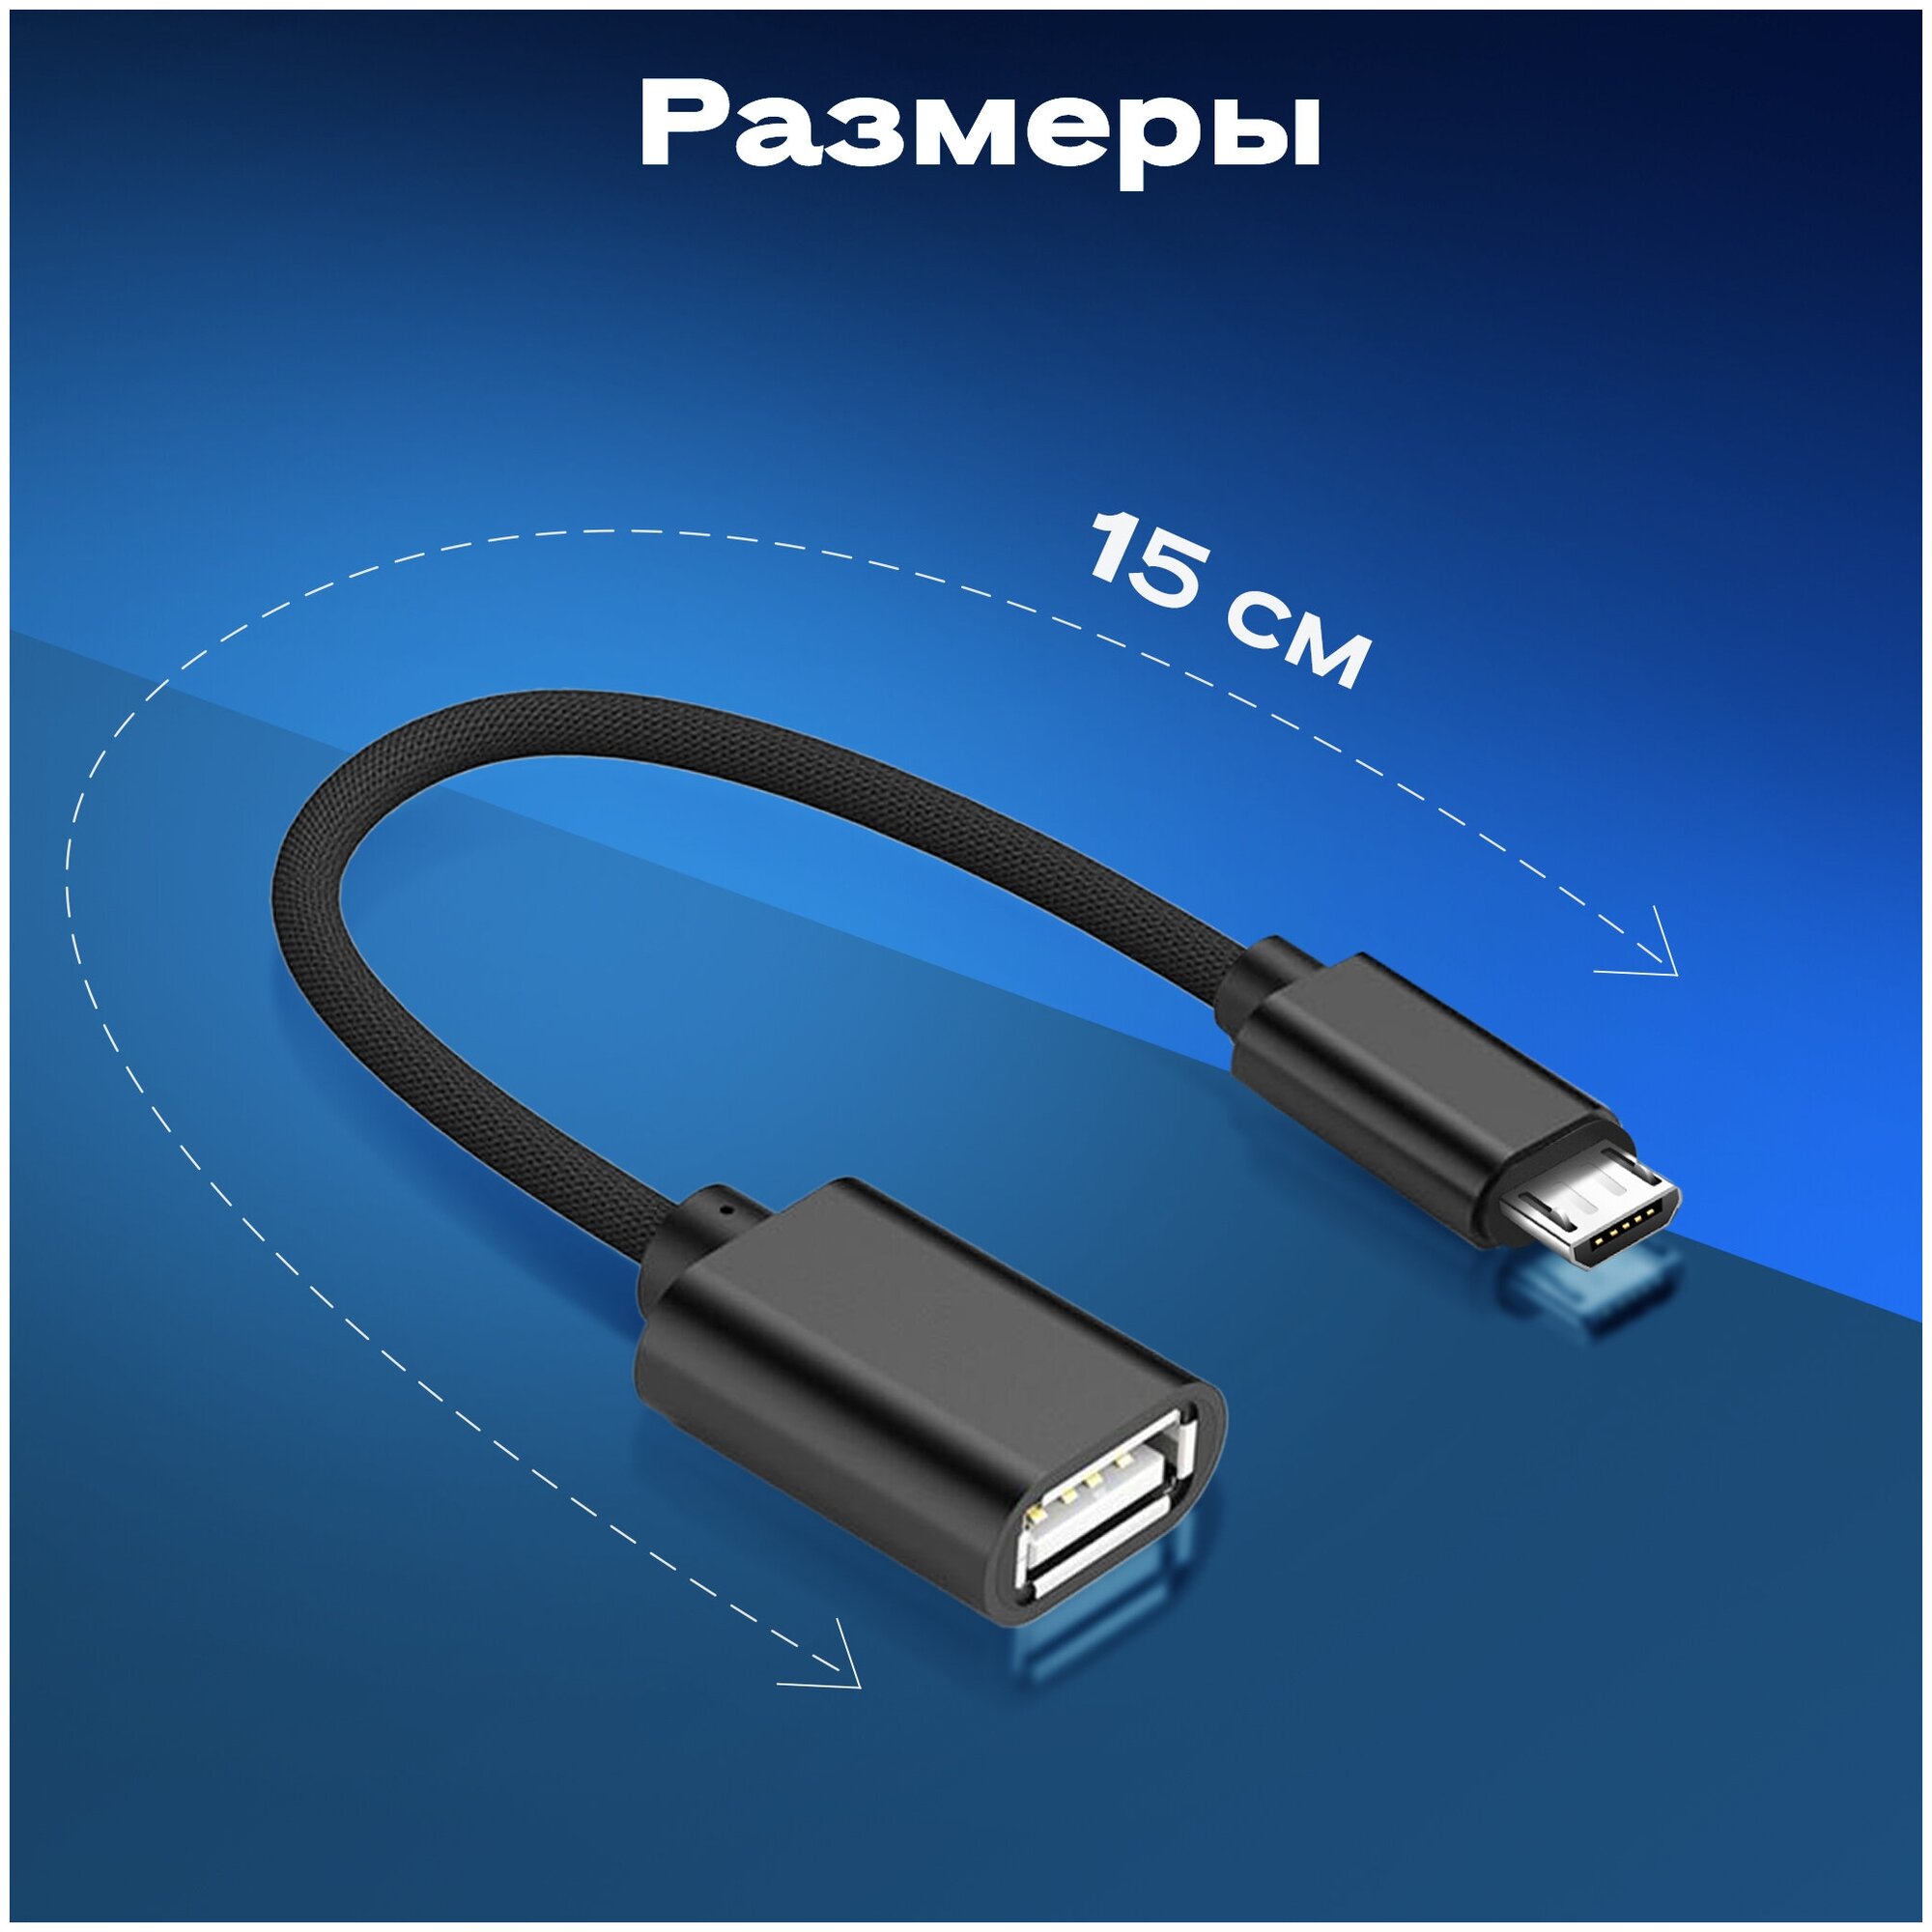 Переходник адаптер USB microUSB WALKER OTGMIC03 кабель для флешки и передачи данных шнур для телефона android провод дляартфона черный